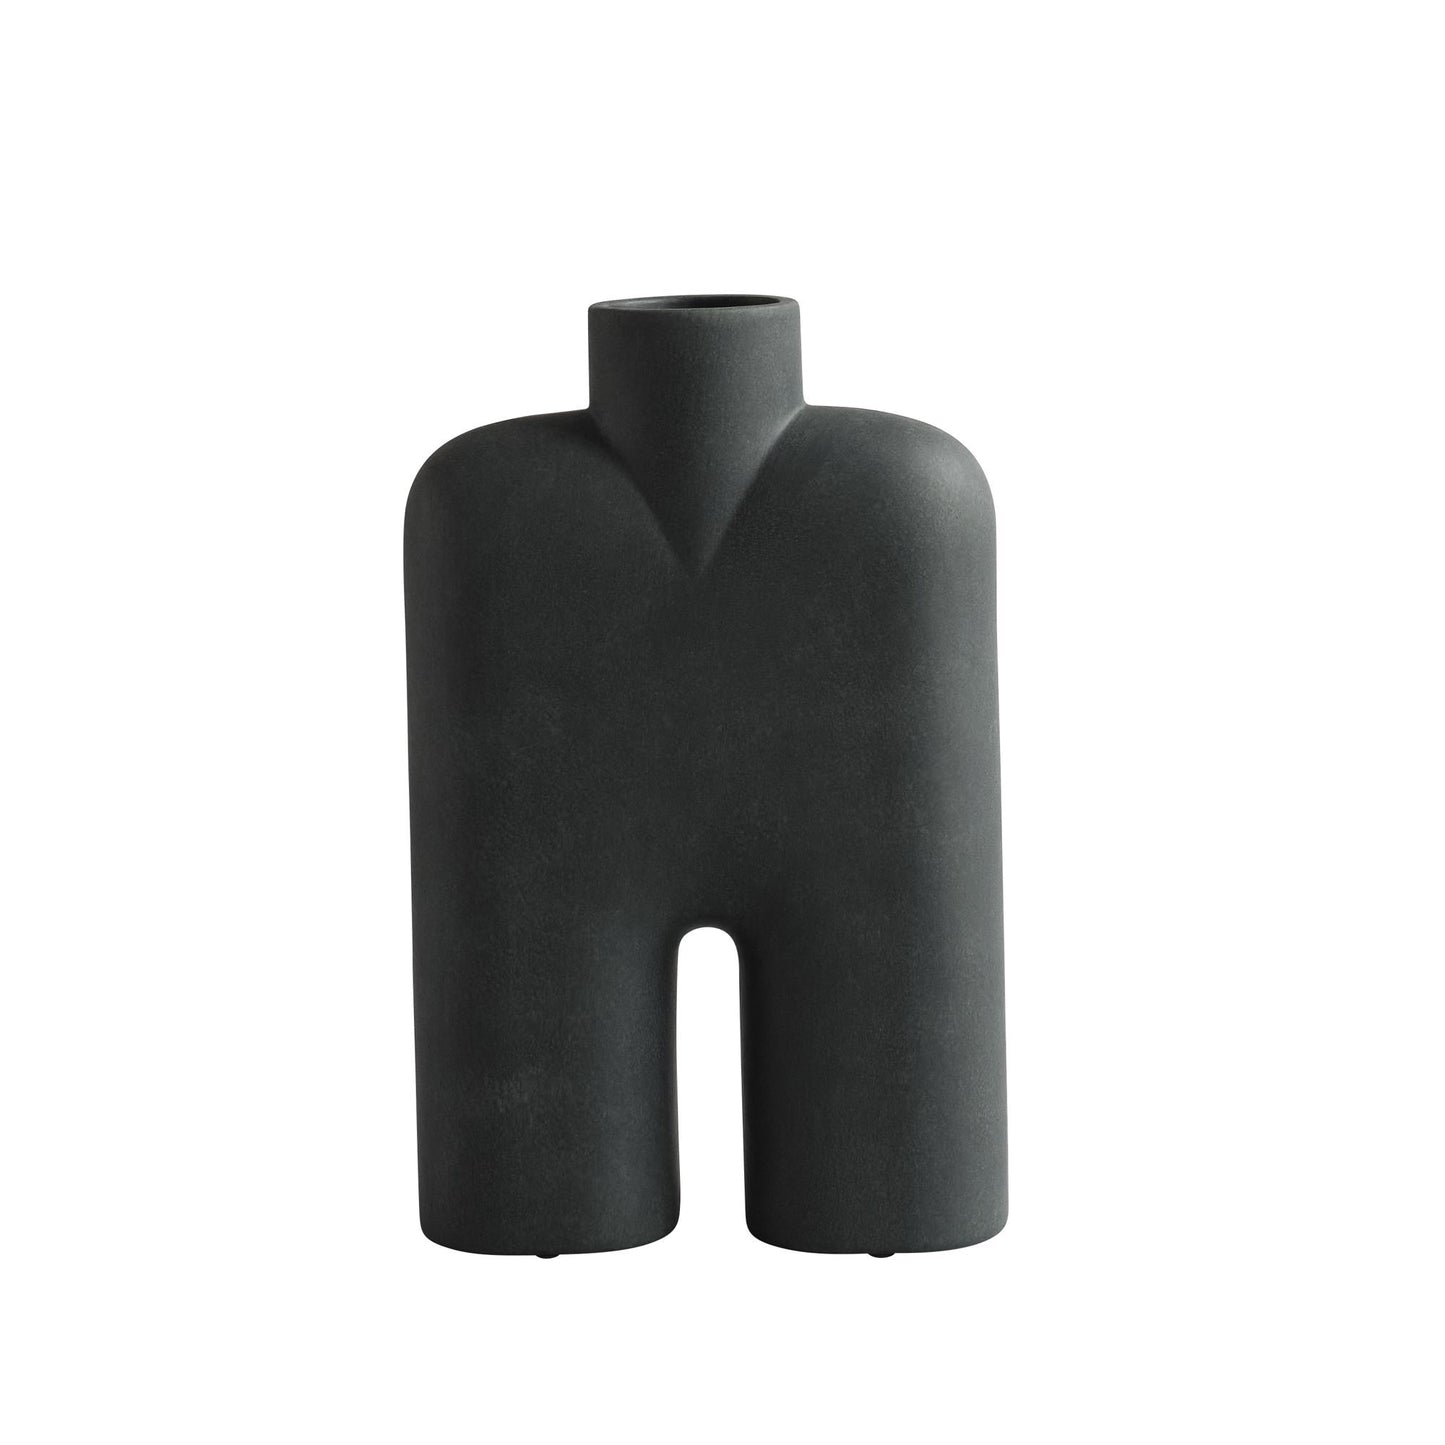 Cobra Vase Tall Medium by 101 Copenhagen #Black